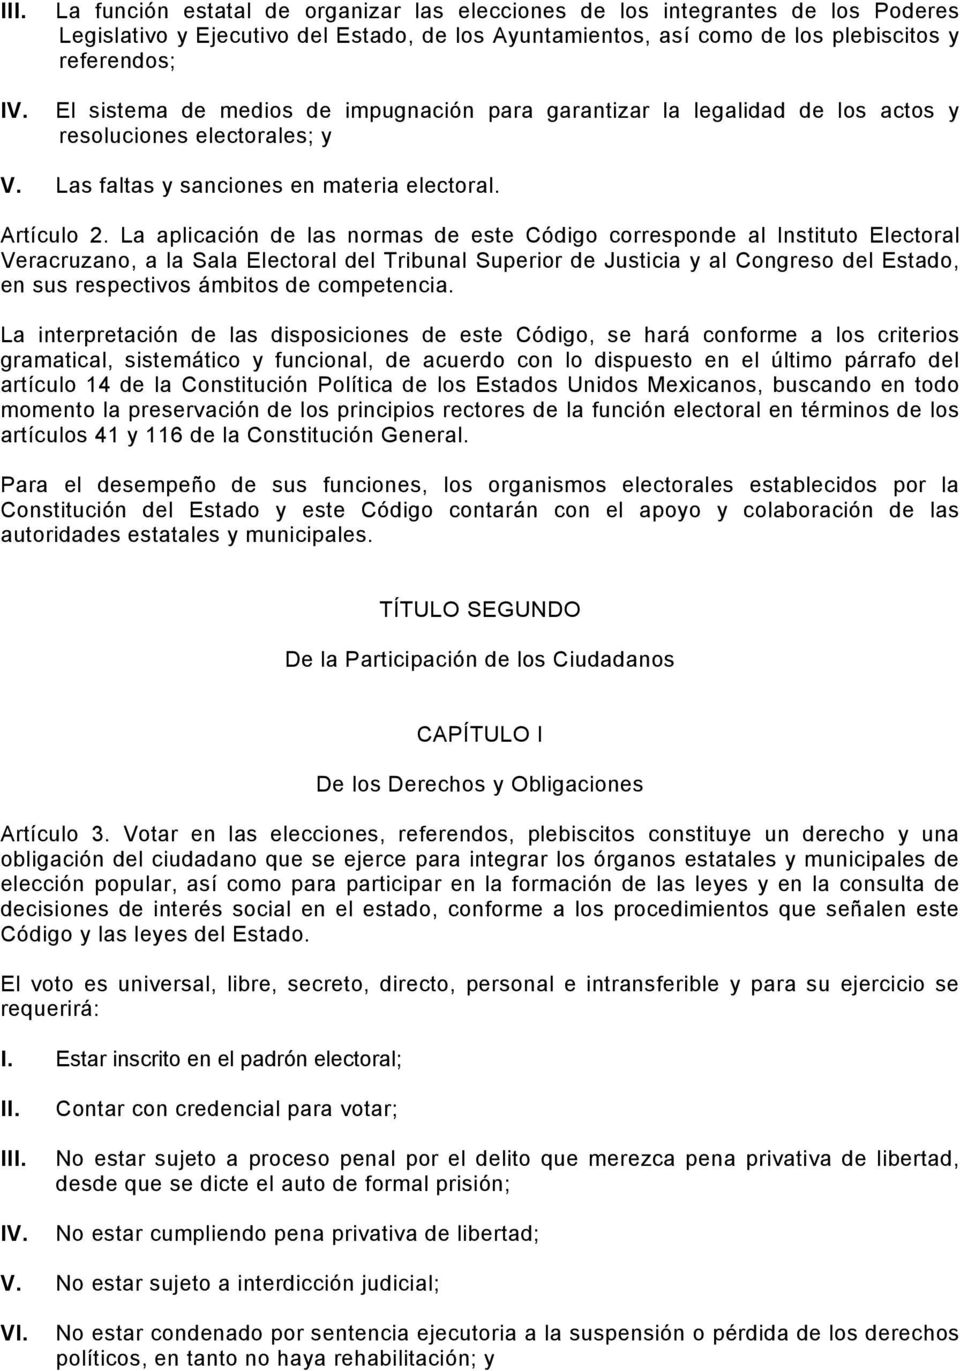 La aplicación de las normas de este Código corresponde al Instituto Electoral Veracruzano, a la Sala Electoral del Tribunal Superior de Justicia y al Congreso del Estado, en sus respectivos ámbitos